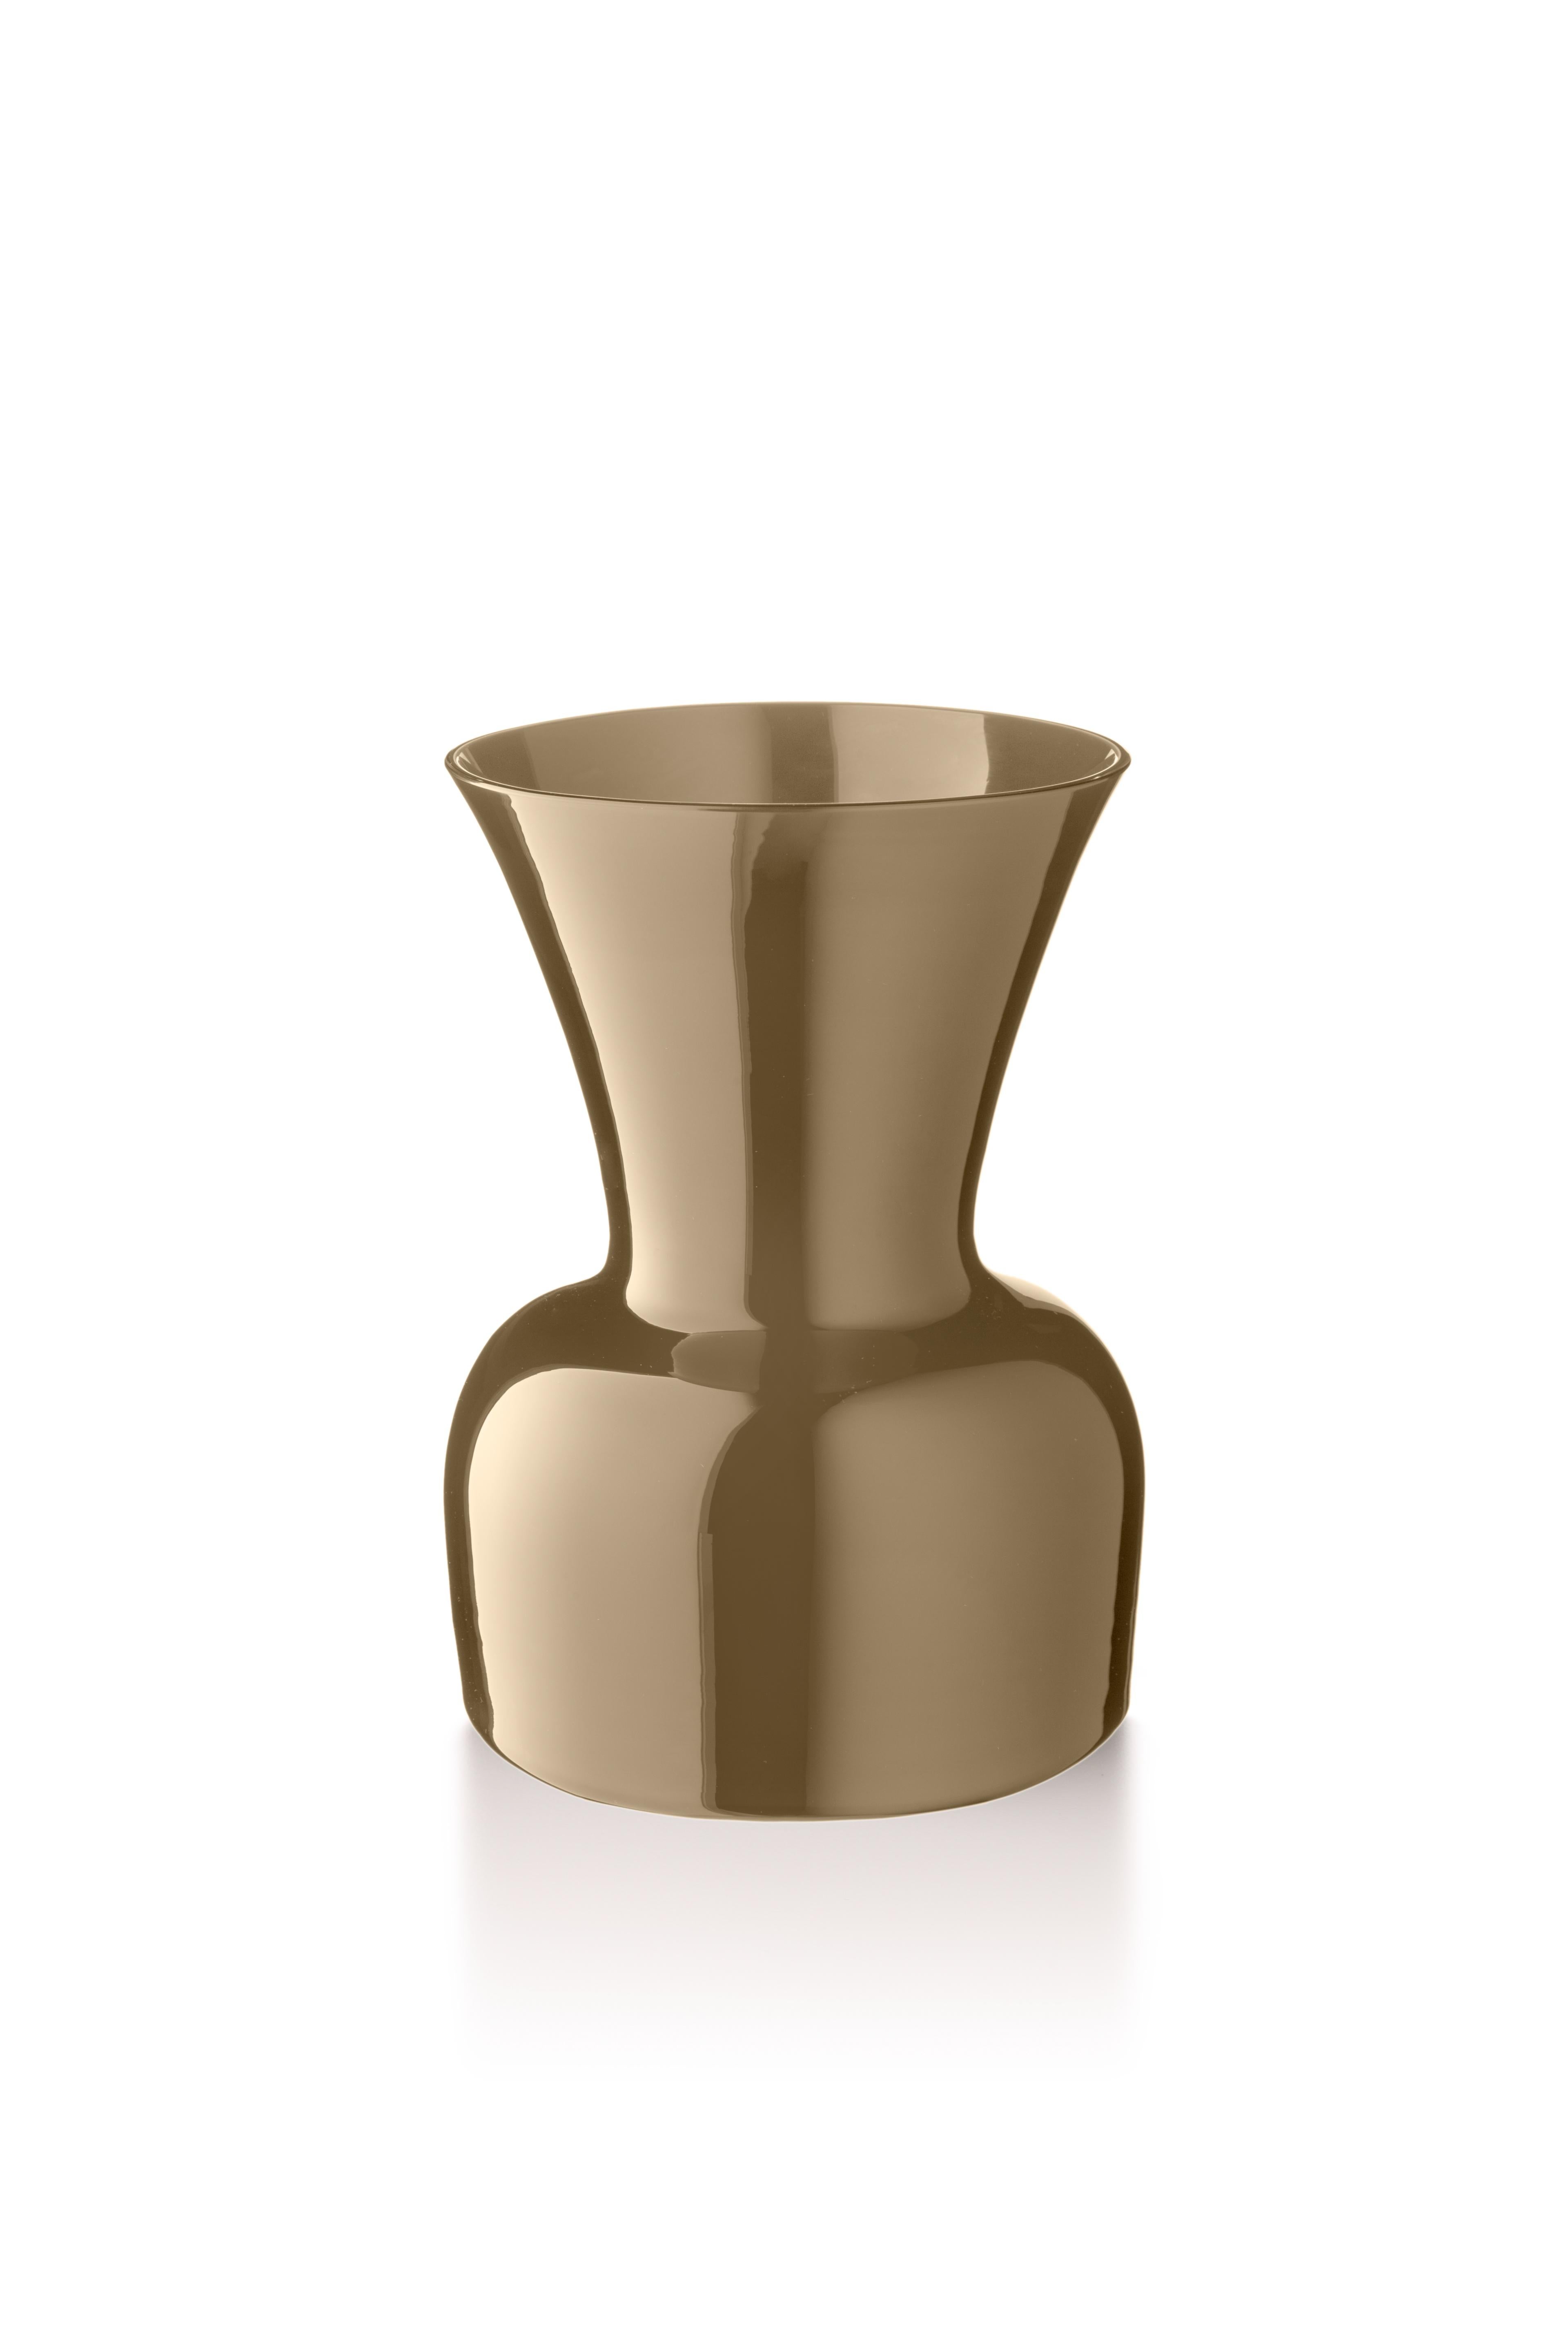 Gray (10070) Medium Profili Daisy Murano Glass Vase by Anna Gili